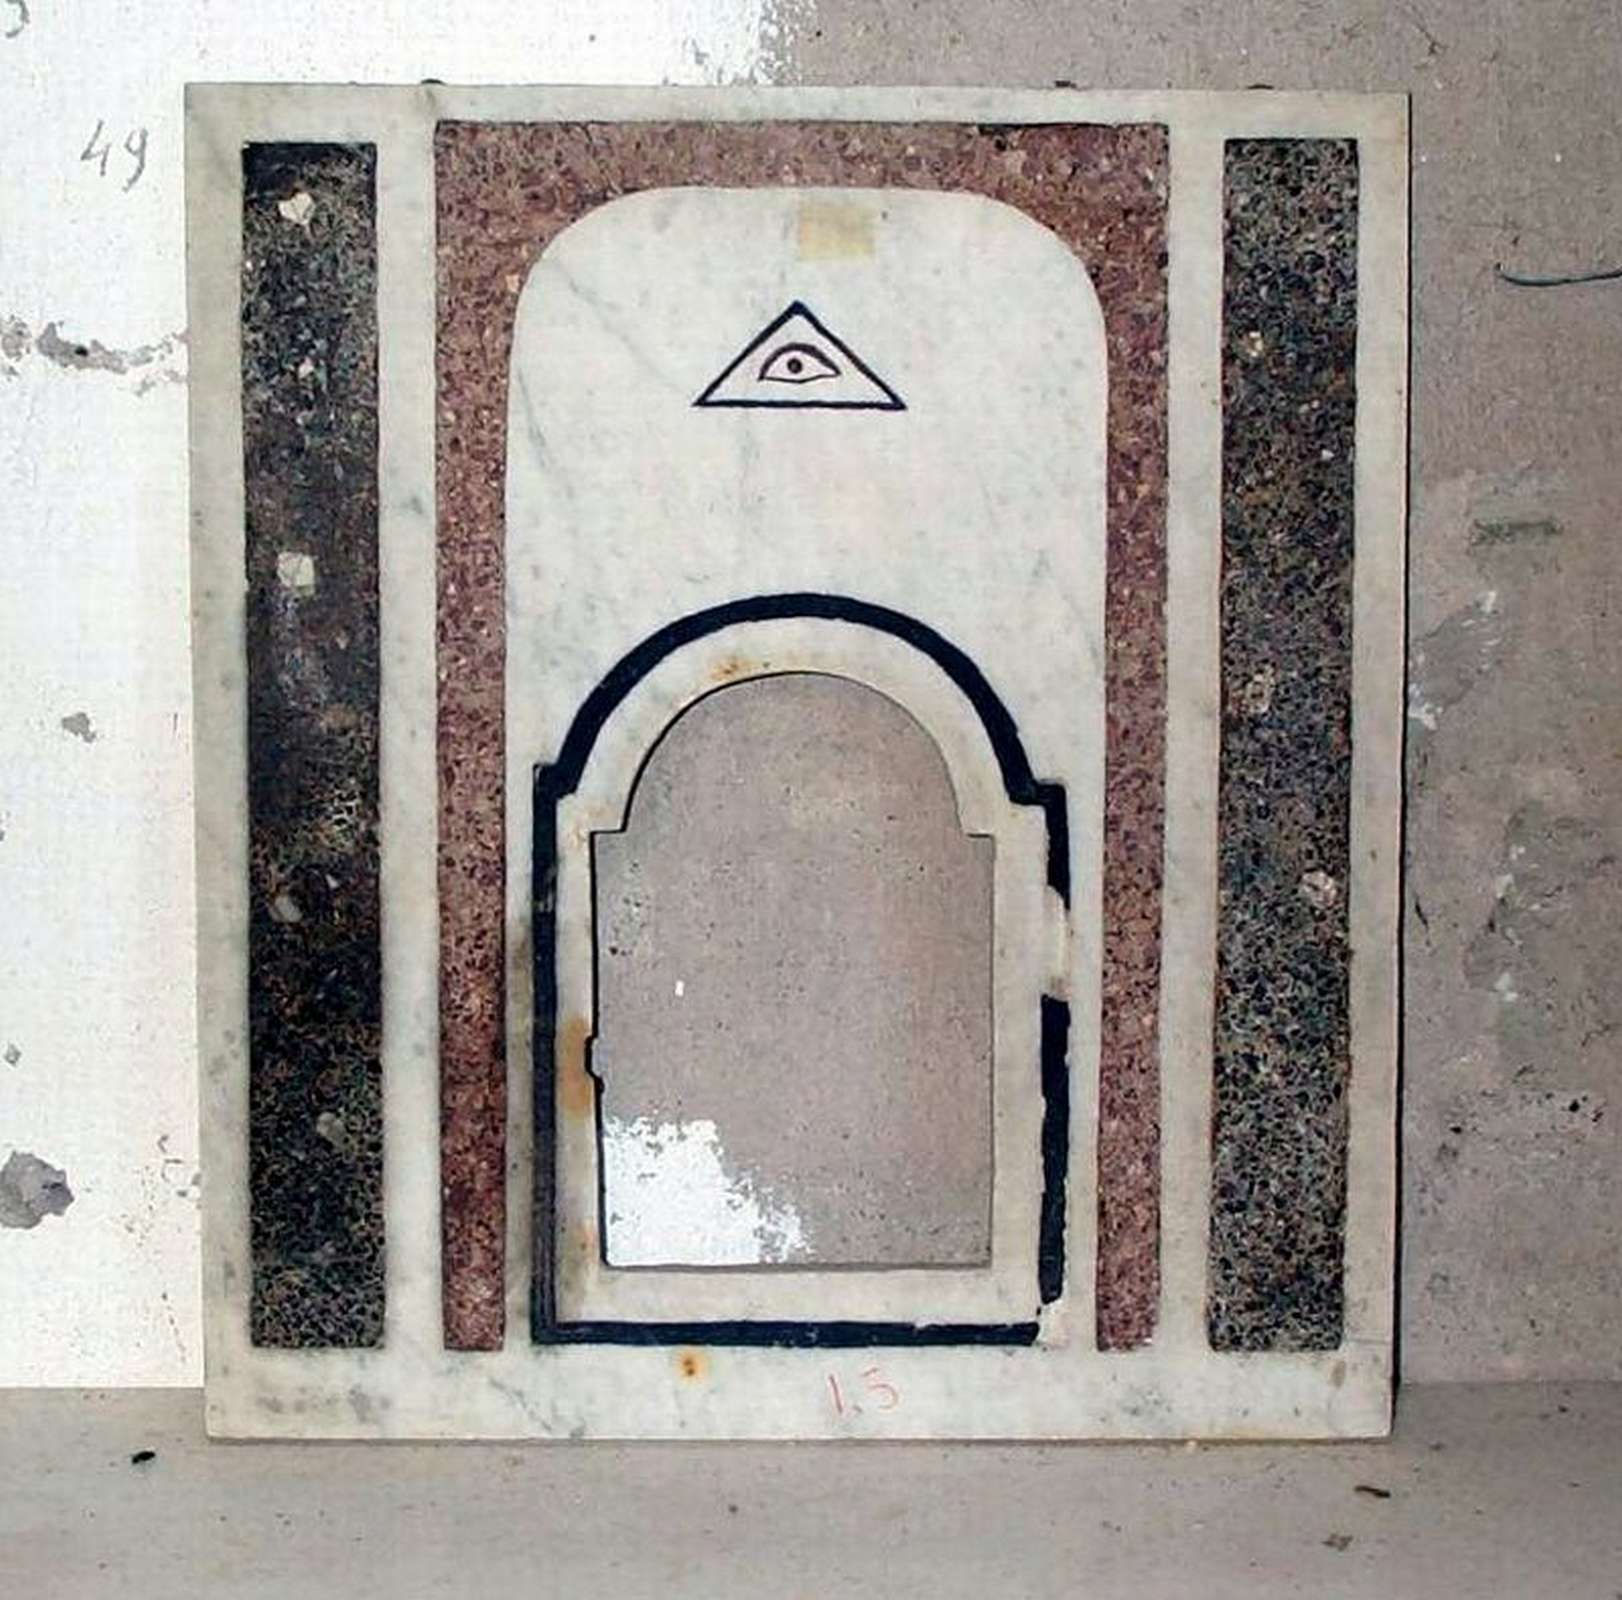 Antico tabernacolo in marmo. Epoca 1700. - Tabernacoli - Architettura - Prodotti - Antichità Fiorillo